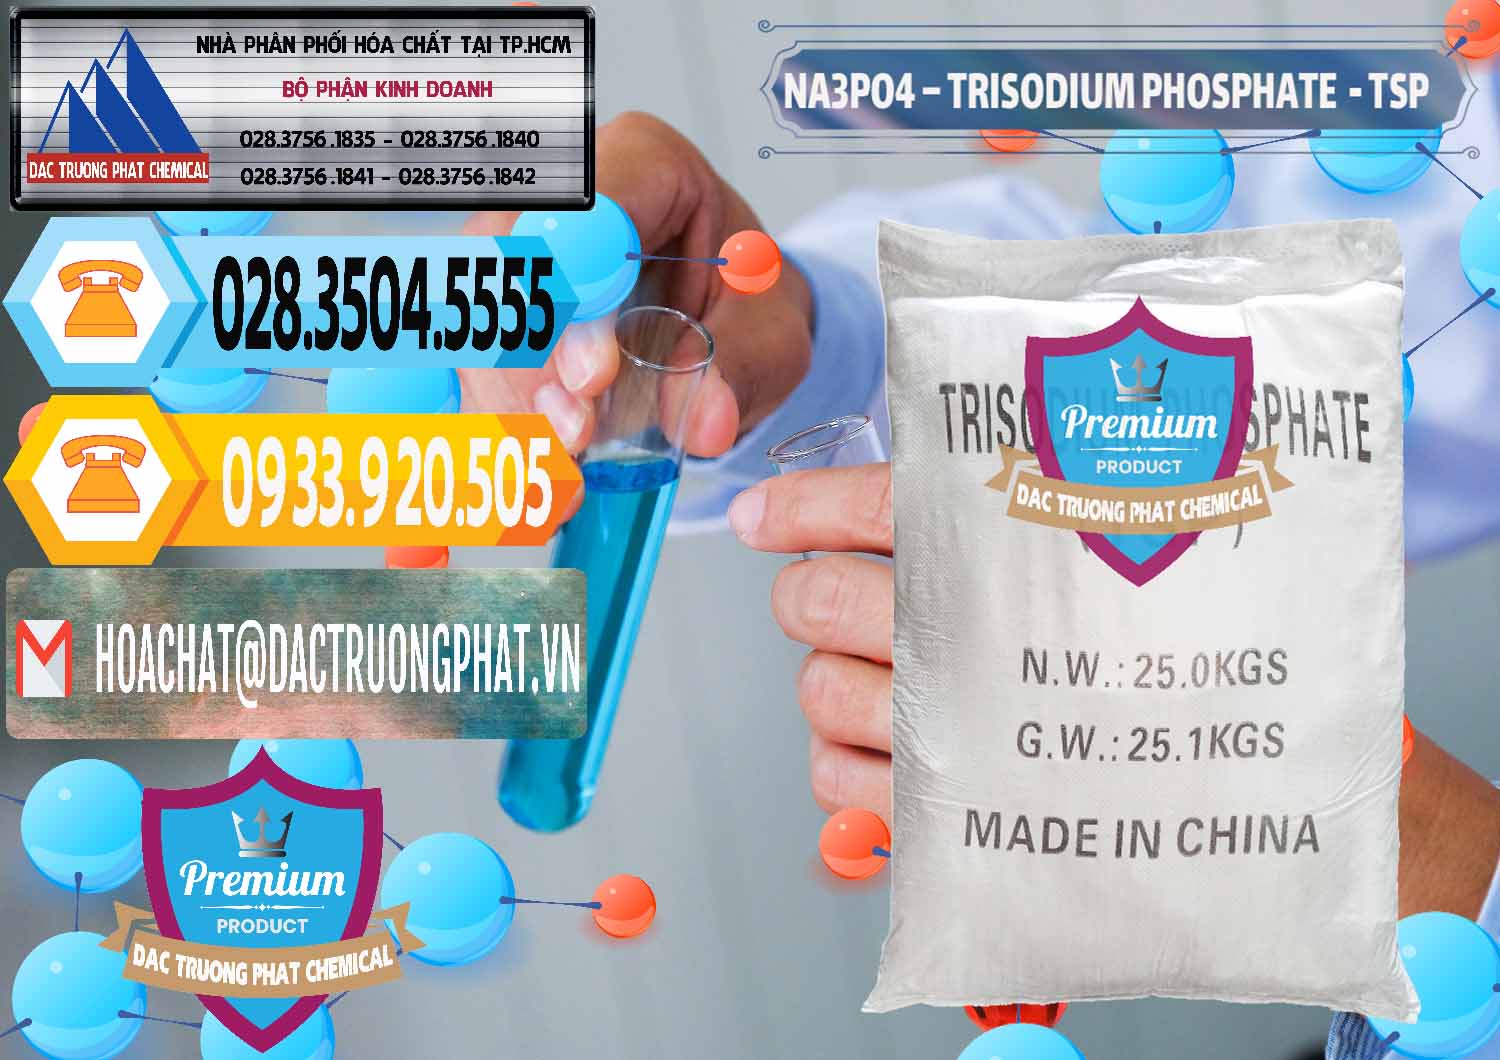 Nơi chuyên bán và cung cấp Na3PO4 – Trisodium Phosphate Trung Quốc China TSP - 0103 - Nhập khẩu _ cung cấp hóa chất tại TP.HCM - hoachattayrua.net